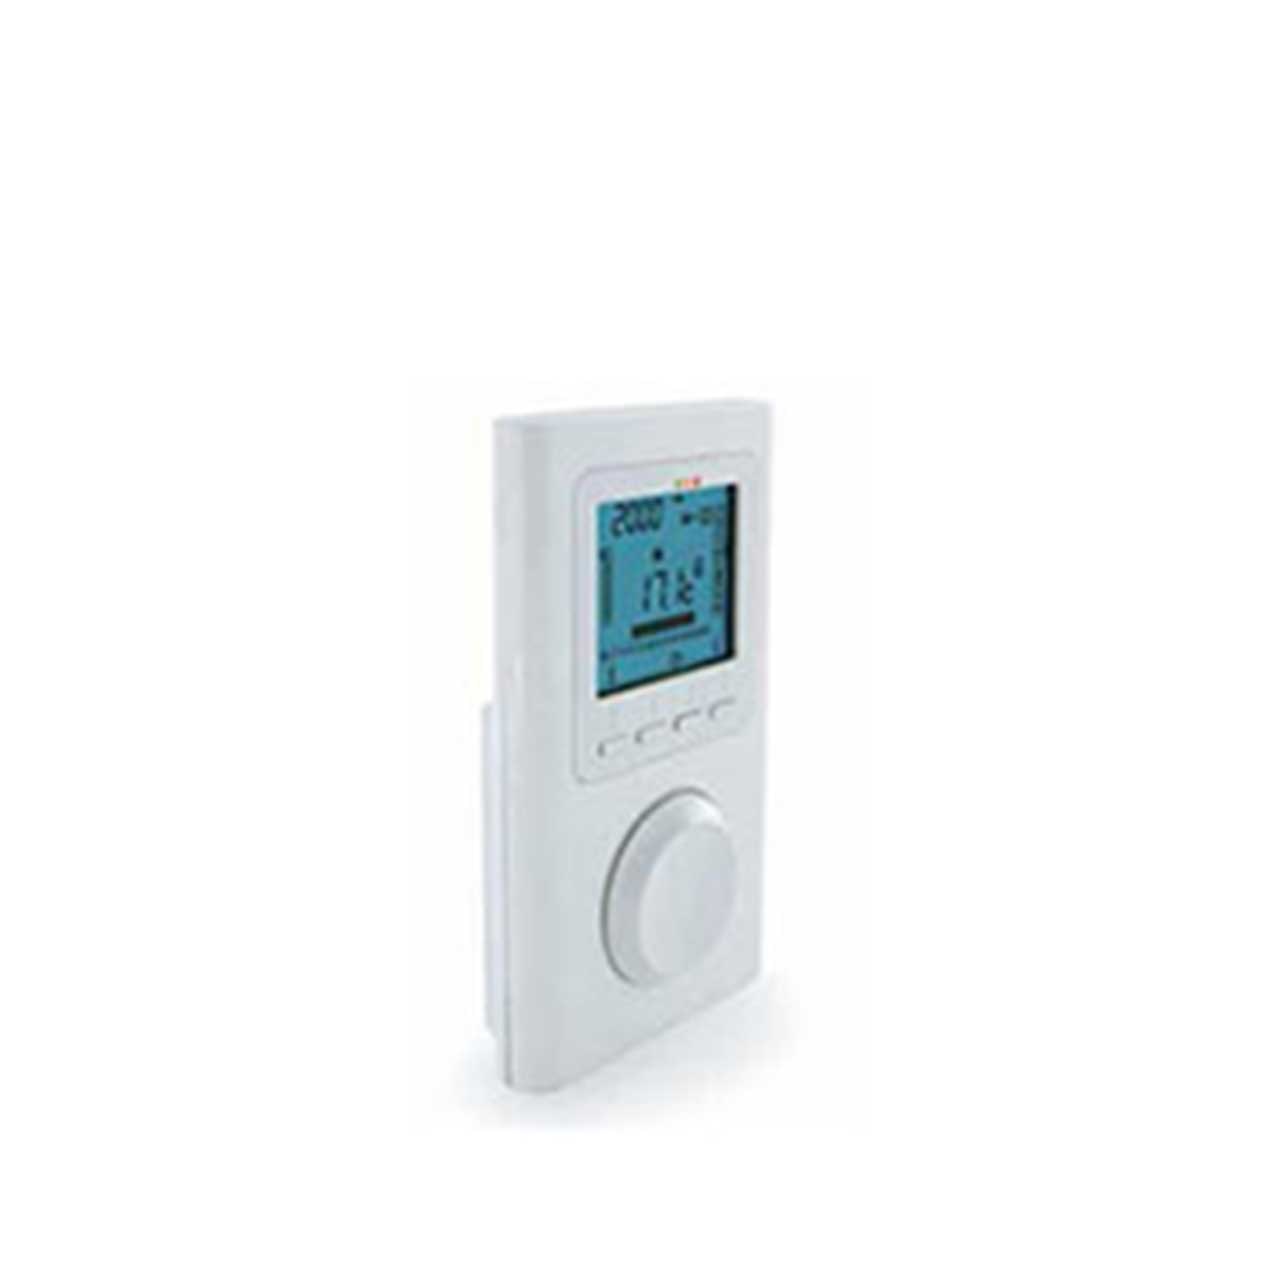 5 conseils pour bien régler votre thermostat